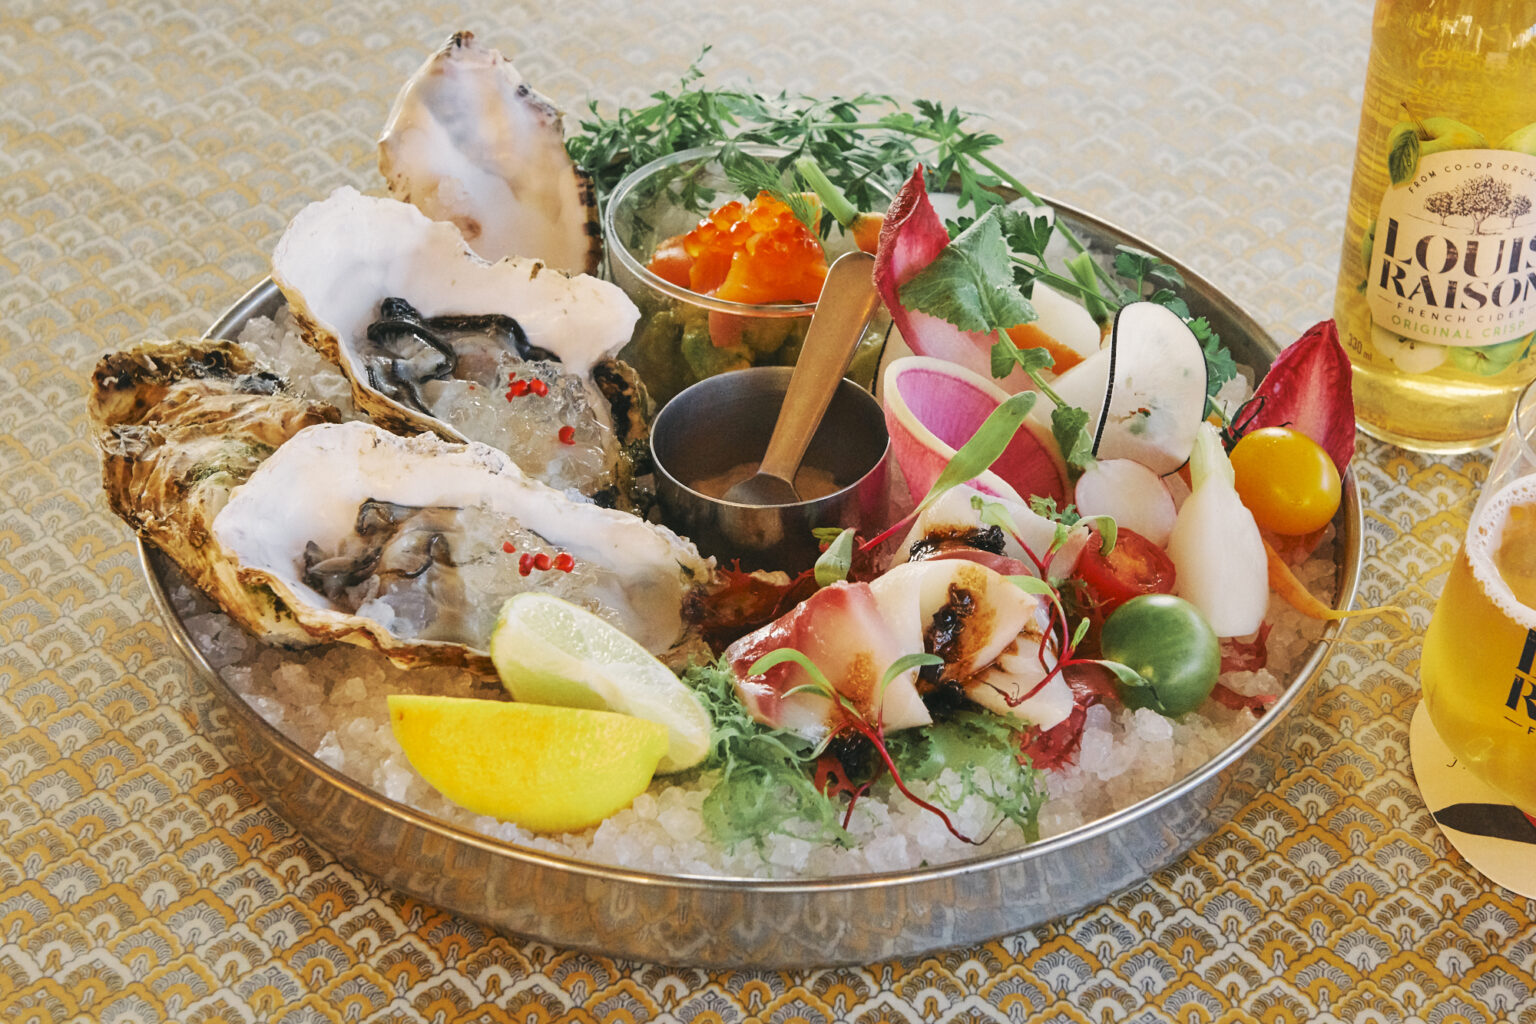 「季節の魚介と野菜のシーフードガーデンプラッター」2,400円。